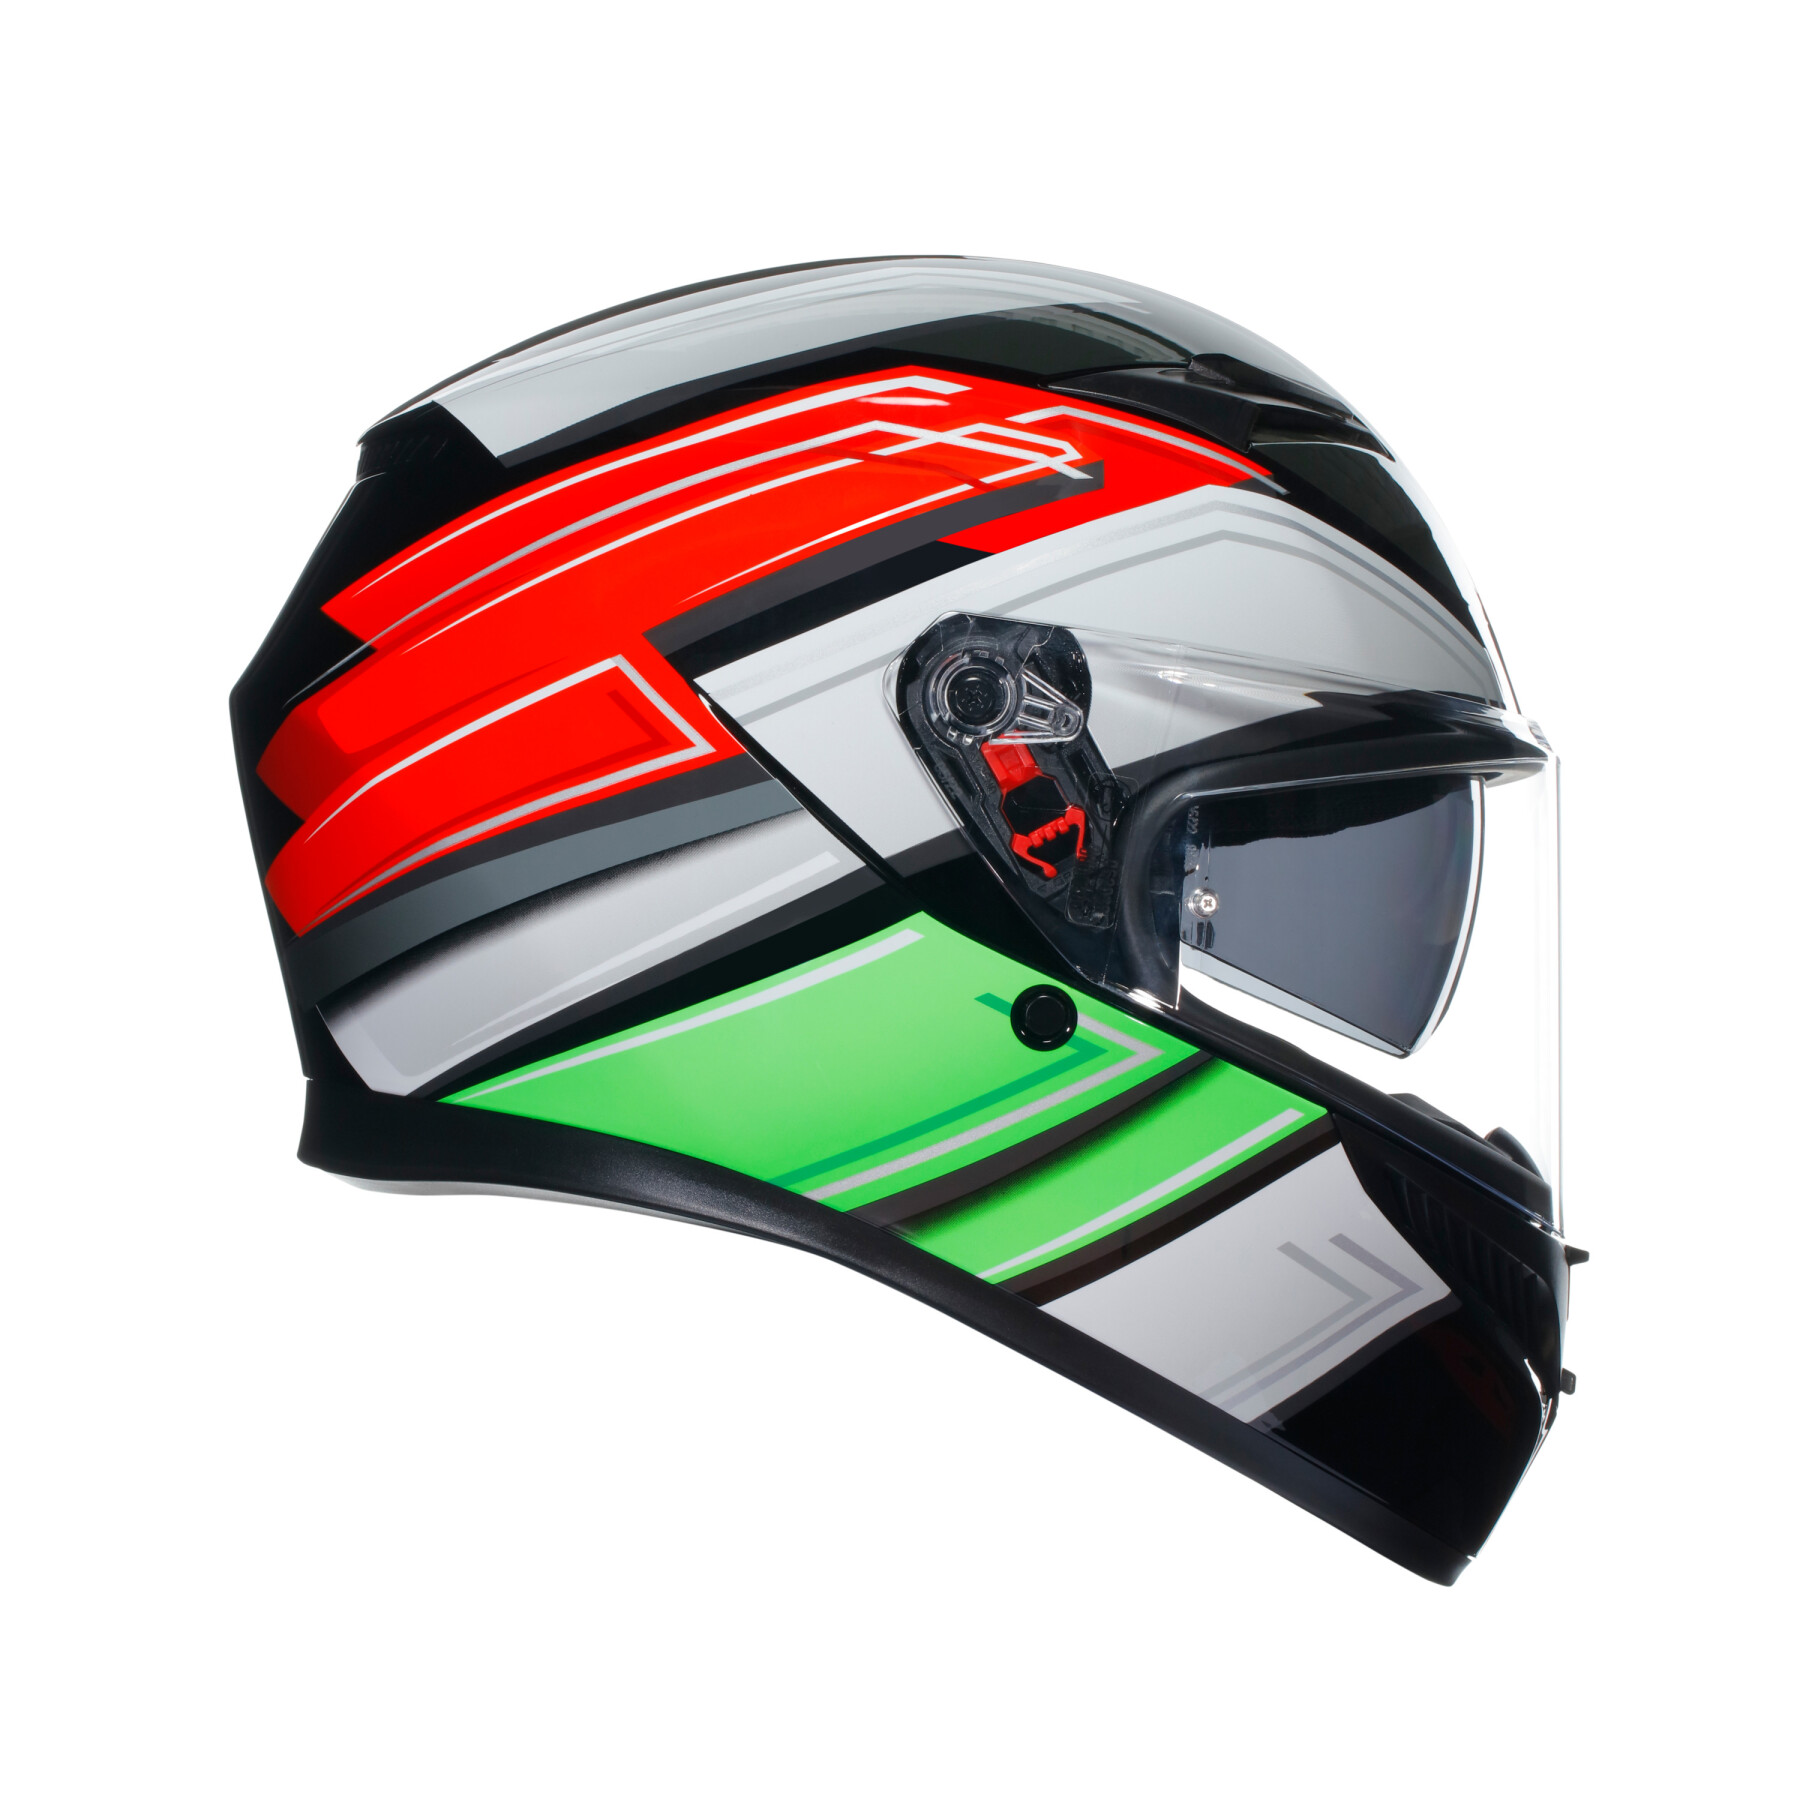 Full face motorcycle helmet AGV K3 Wing